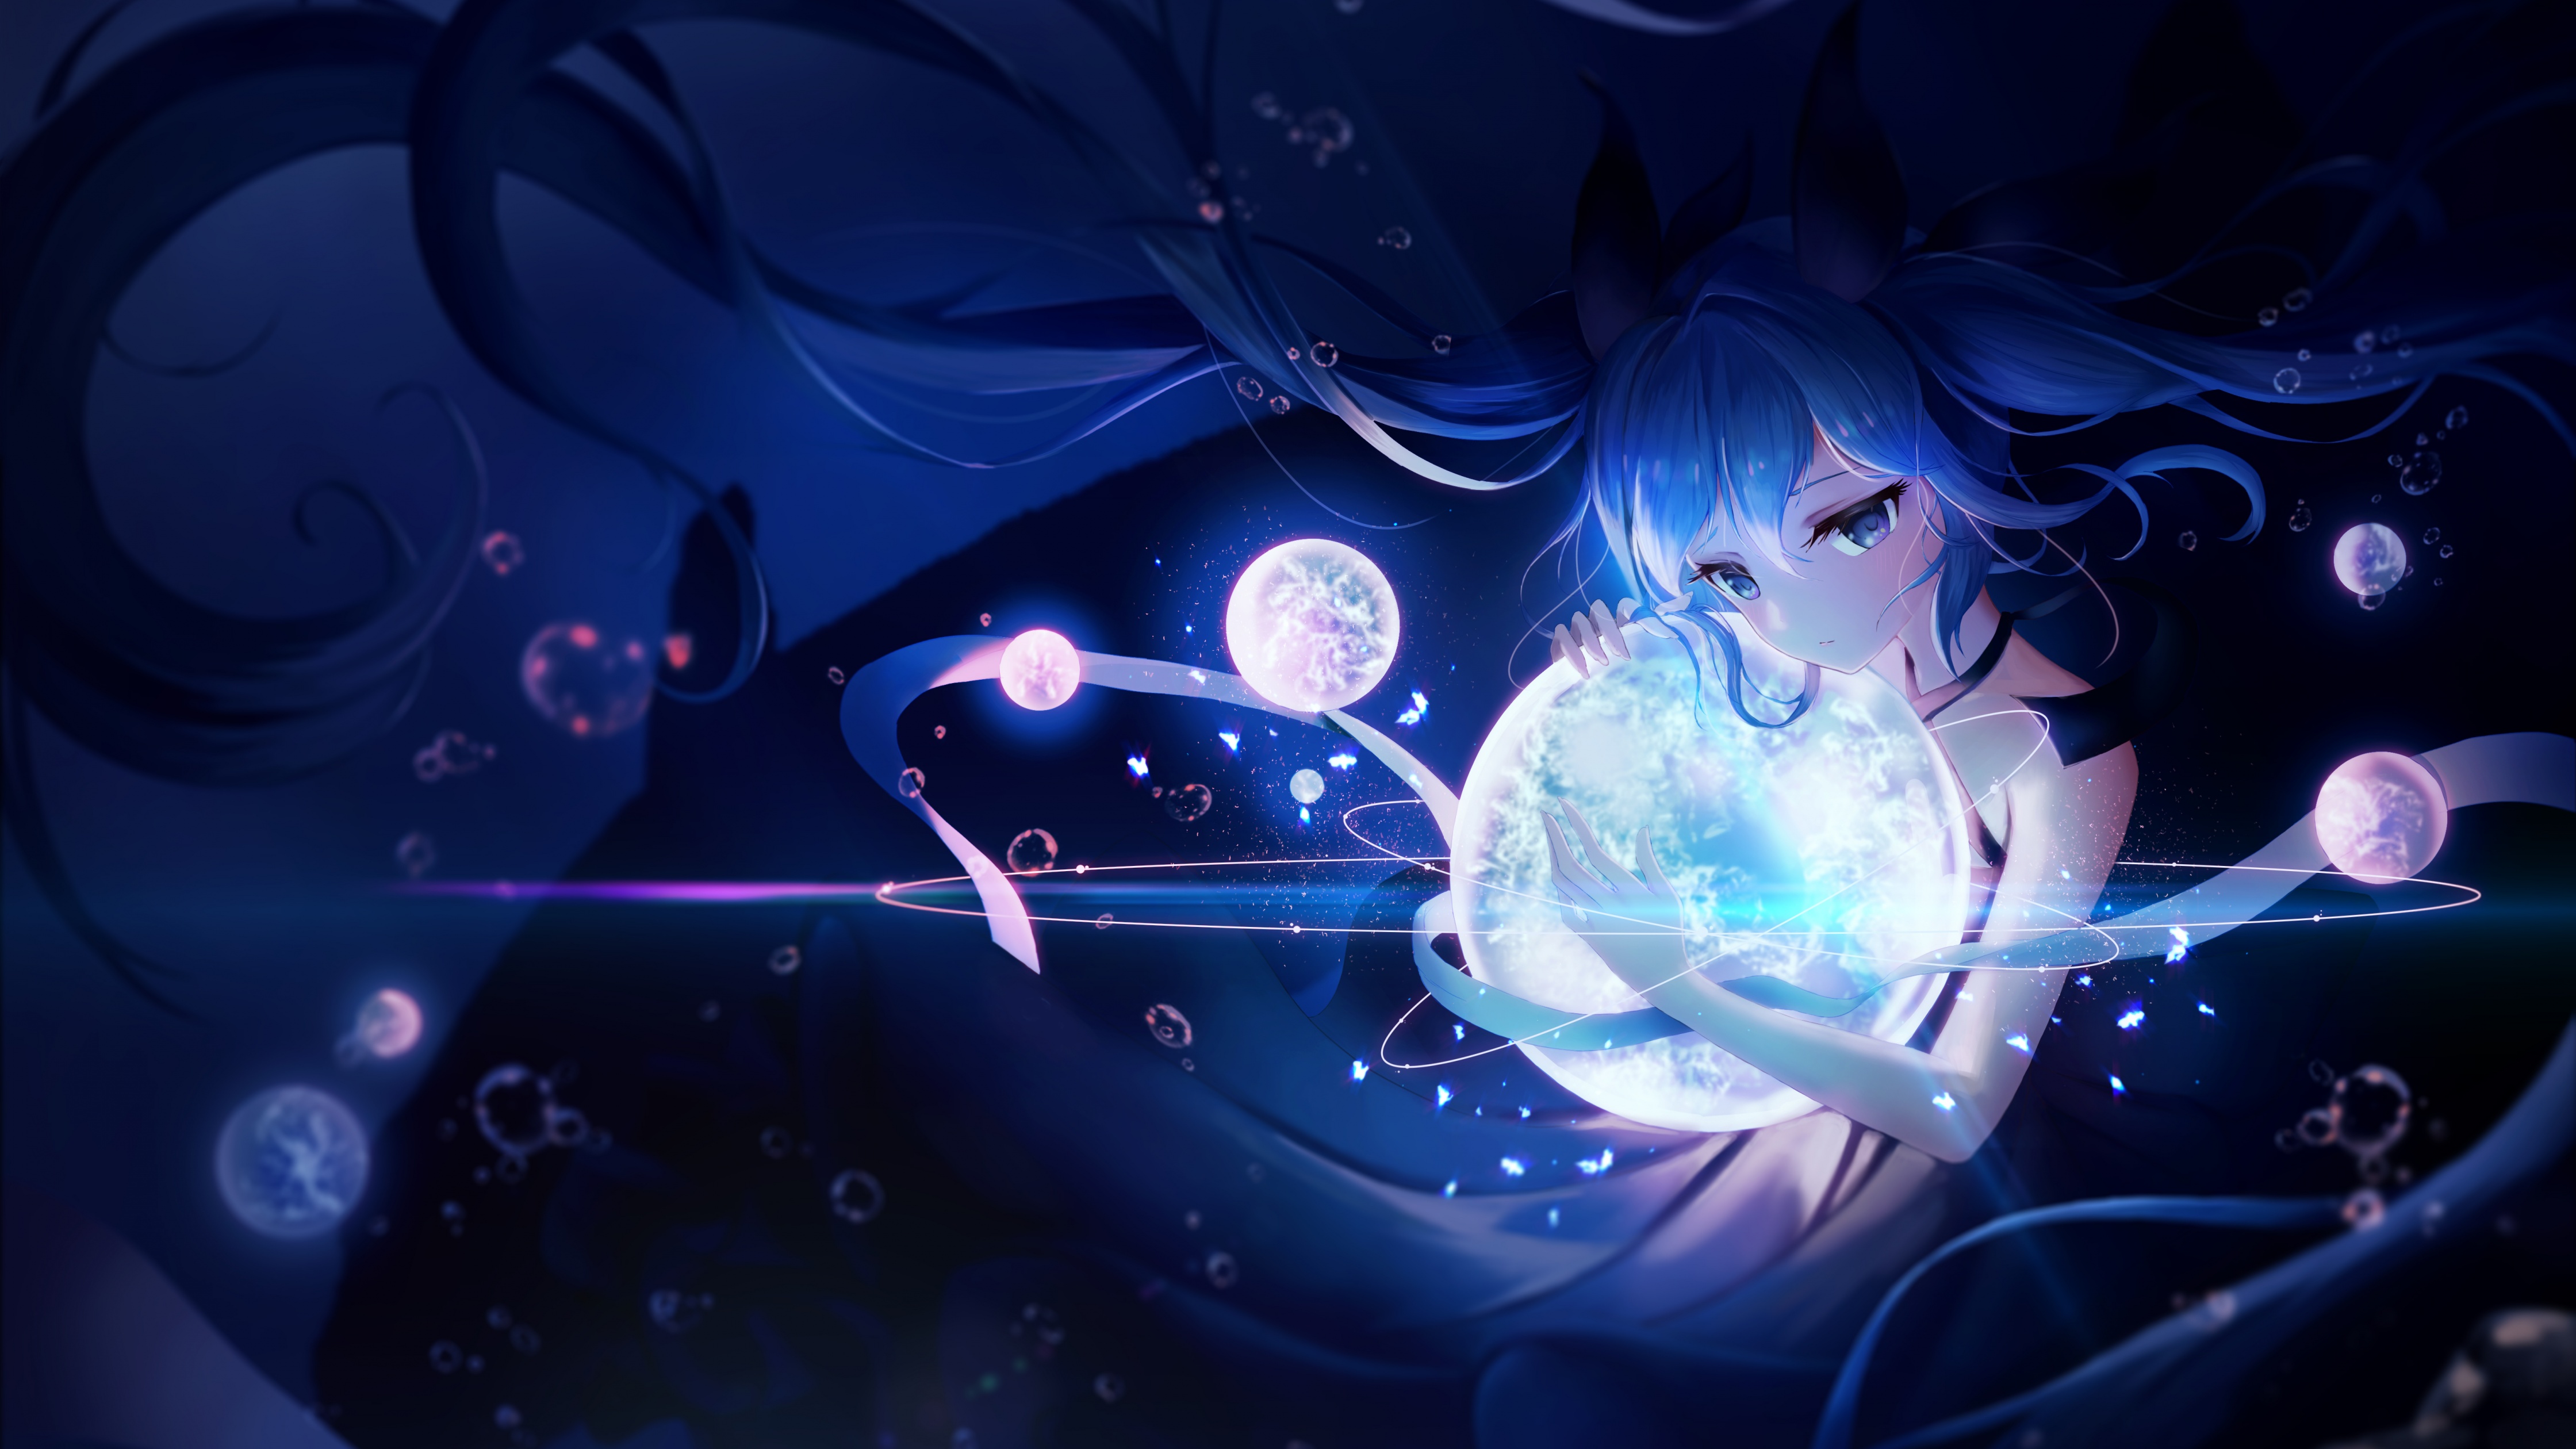 Hatsune Miku Wallpaper 4K, Anime girl, Dream, Fantasy